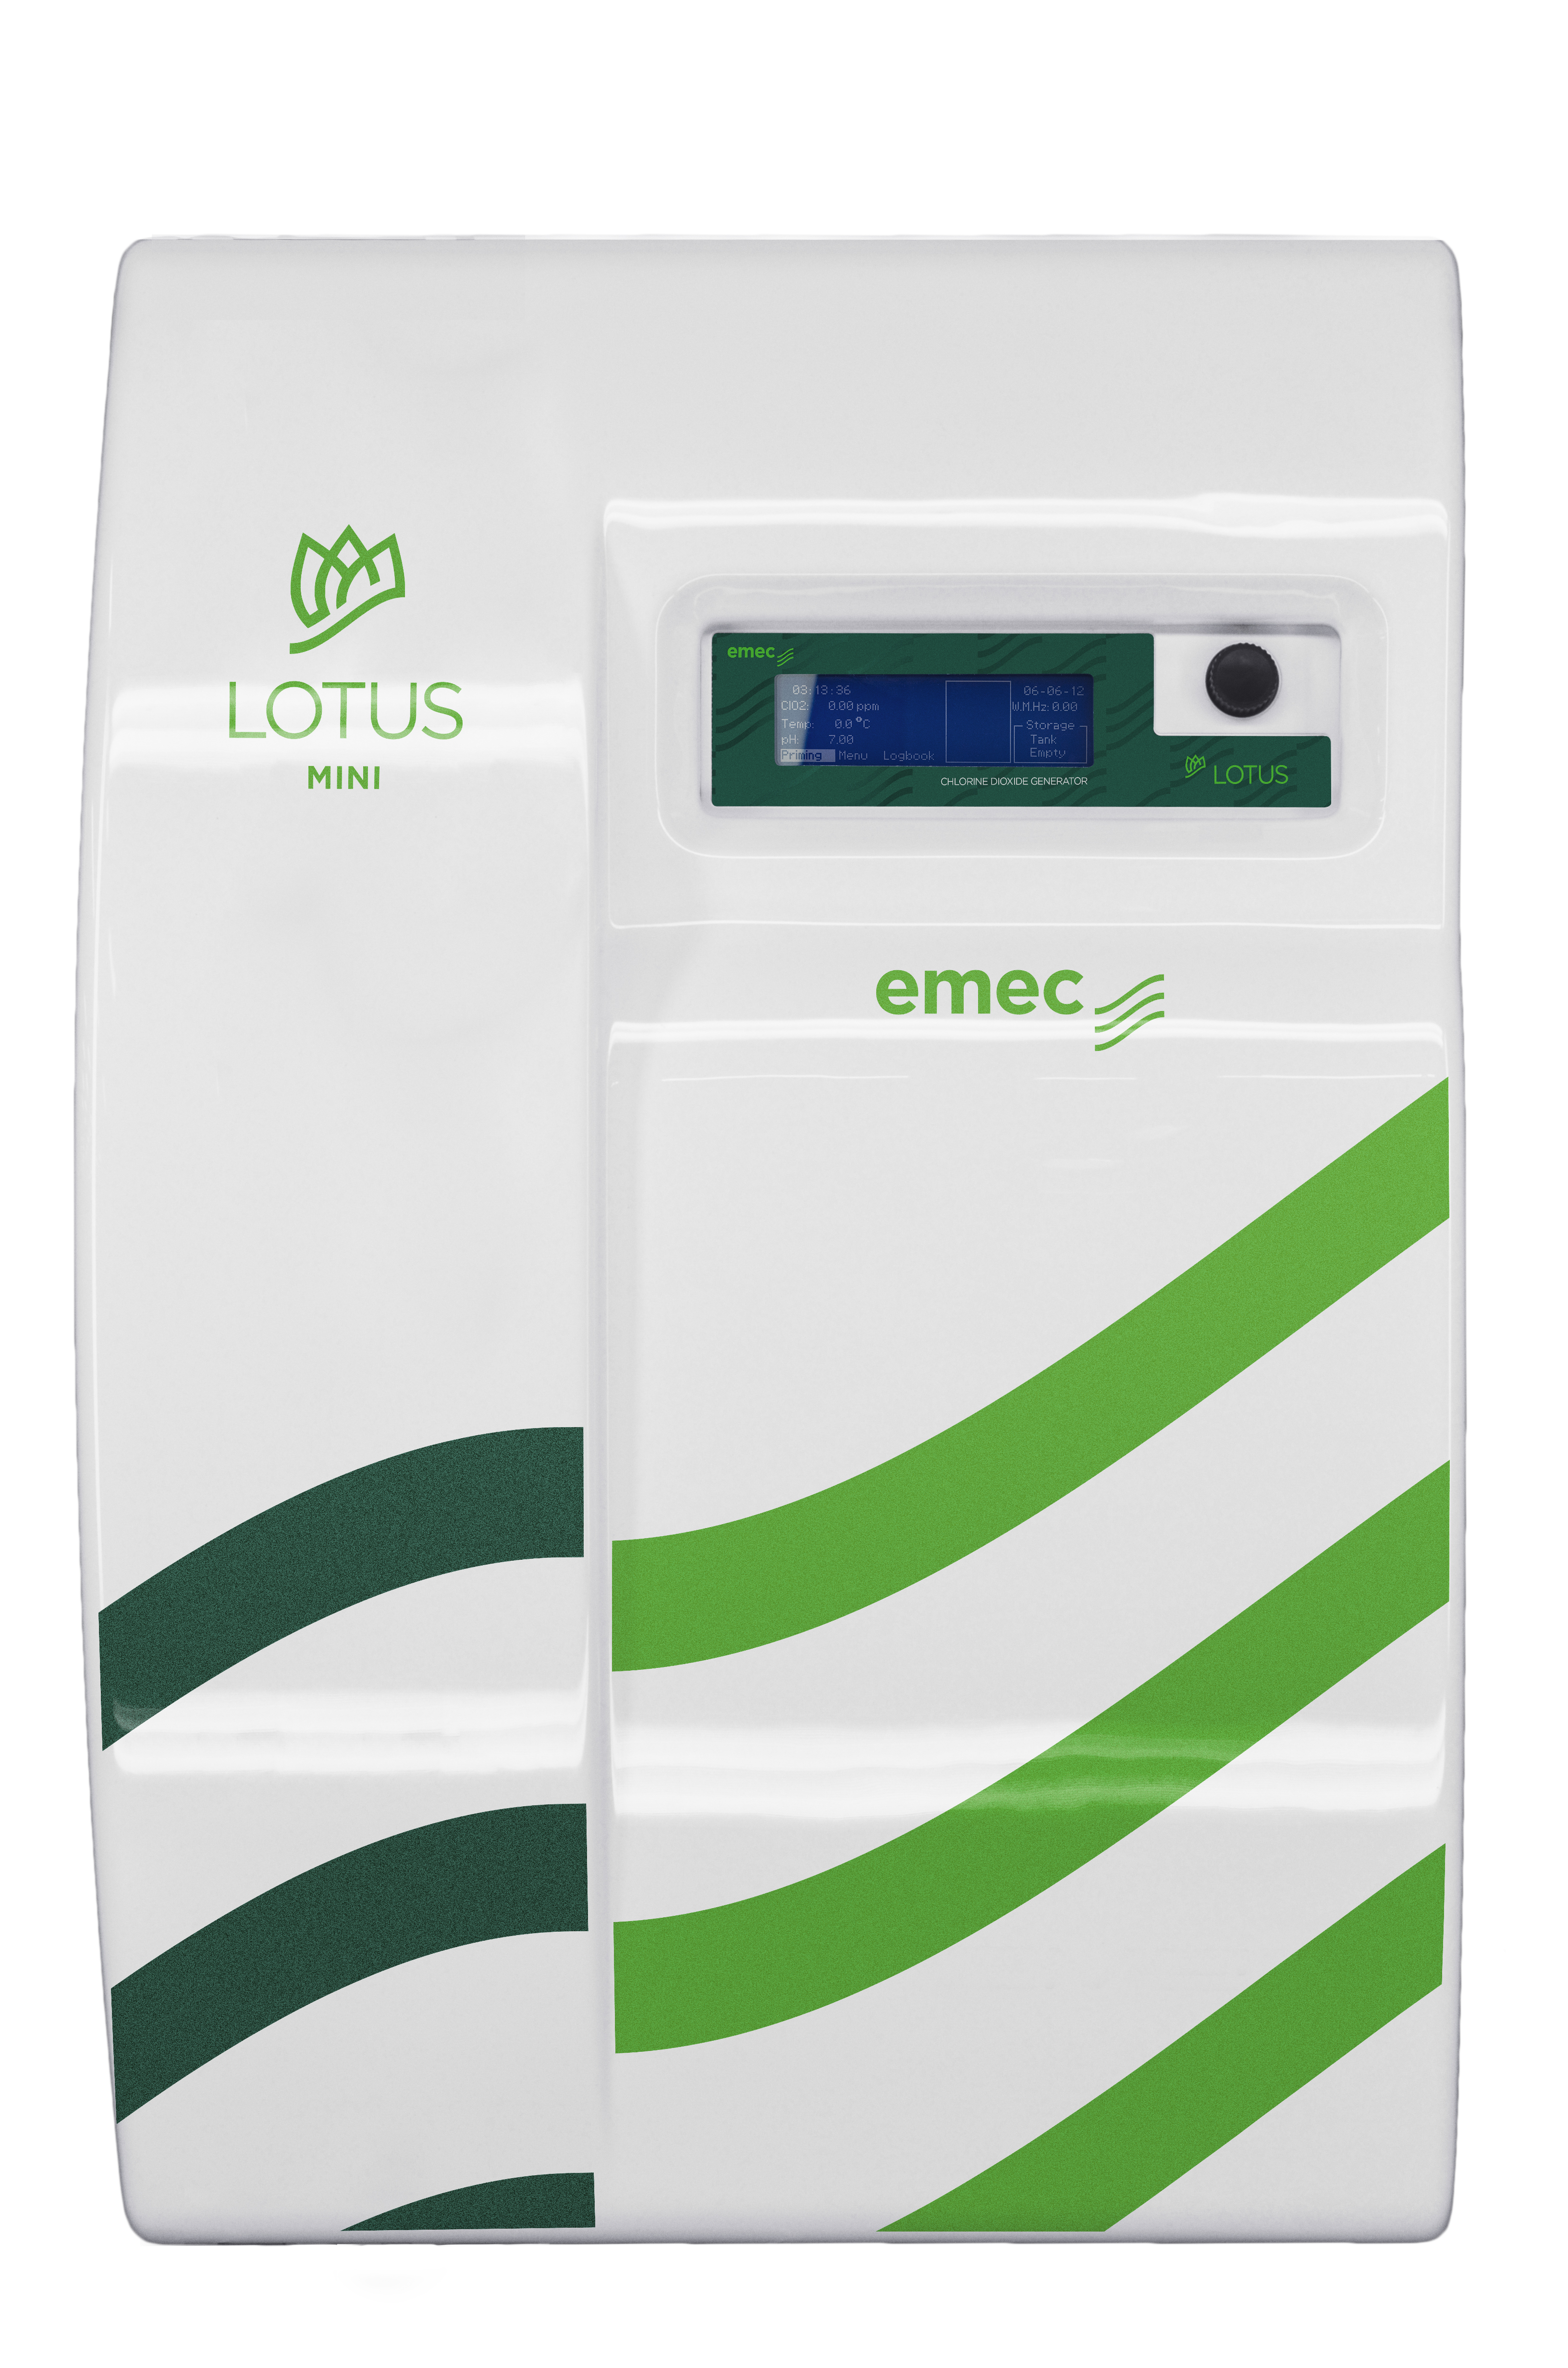 emec LOTUS MINI 20 - Chlorine dioxide generator